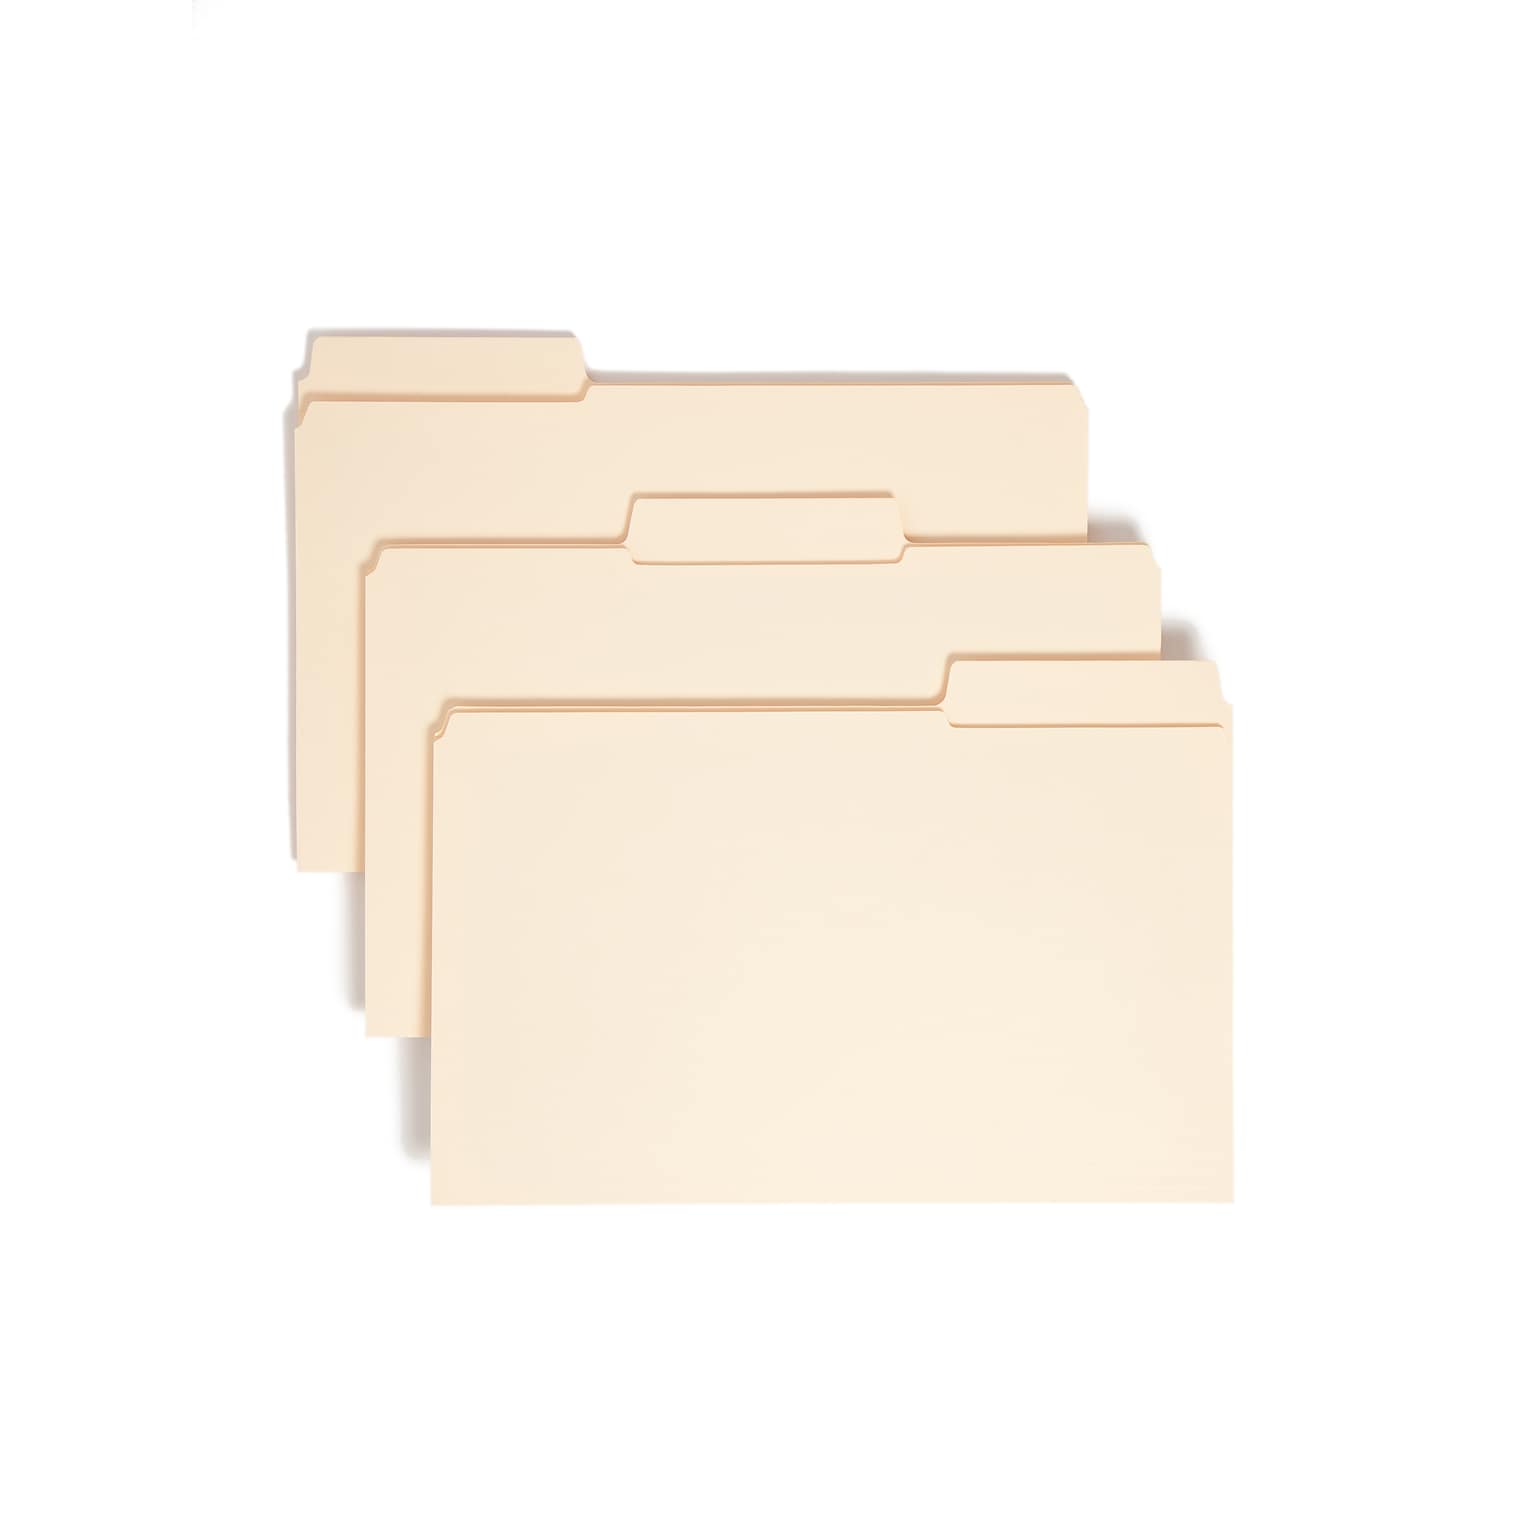 Smead SuperTab Reinforced File Folder, 3 Tab, Legal Size, Manila, 100/Box (15395)